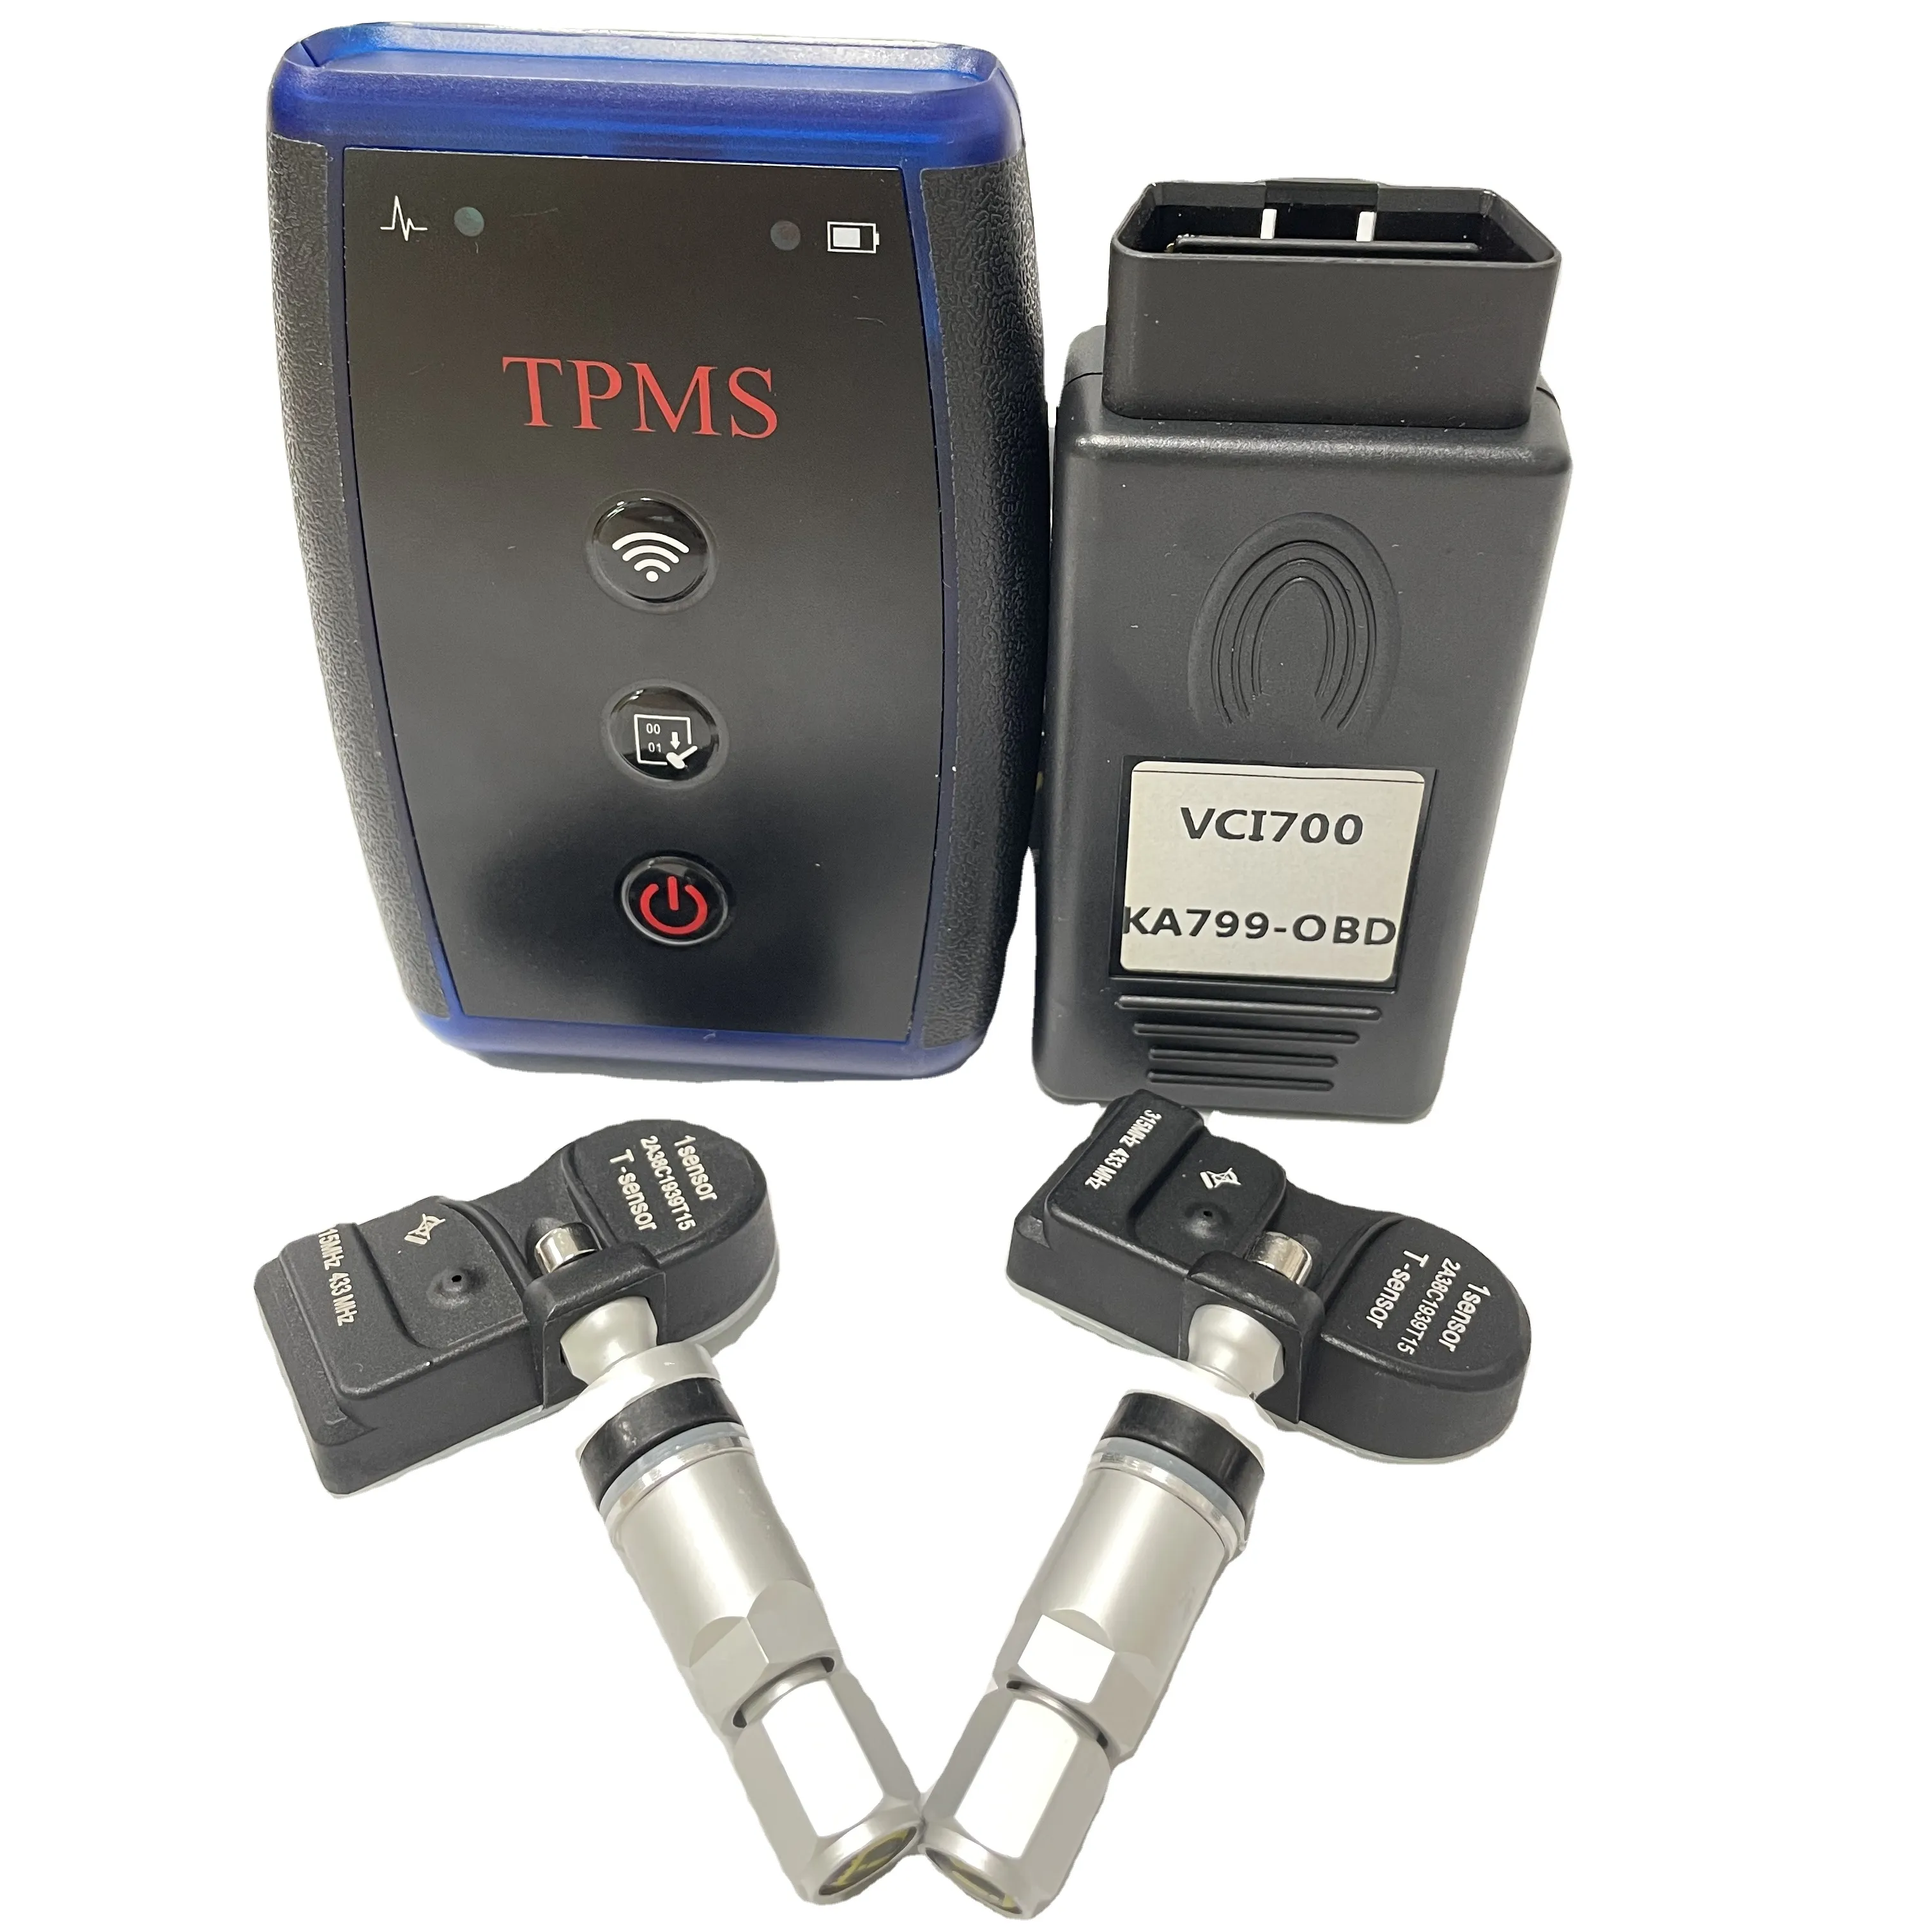 433-315MHz lastik basıncı sensörü İzleme sistemi evrensel araba TPMS sensörleri programlanabilir